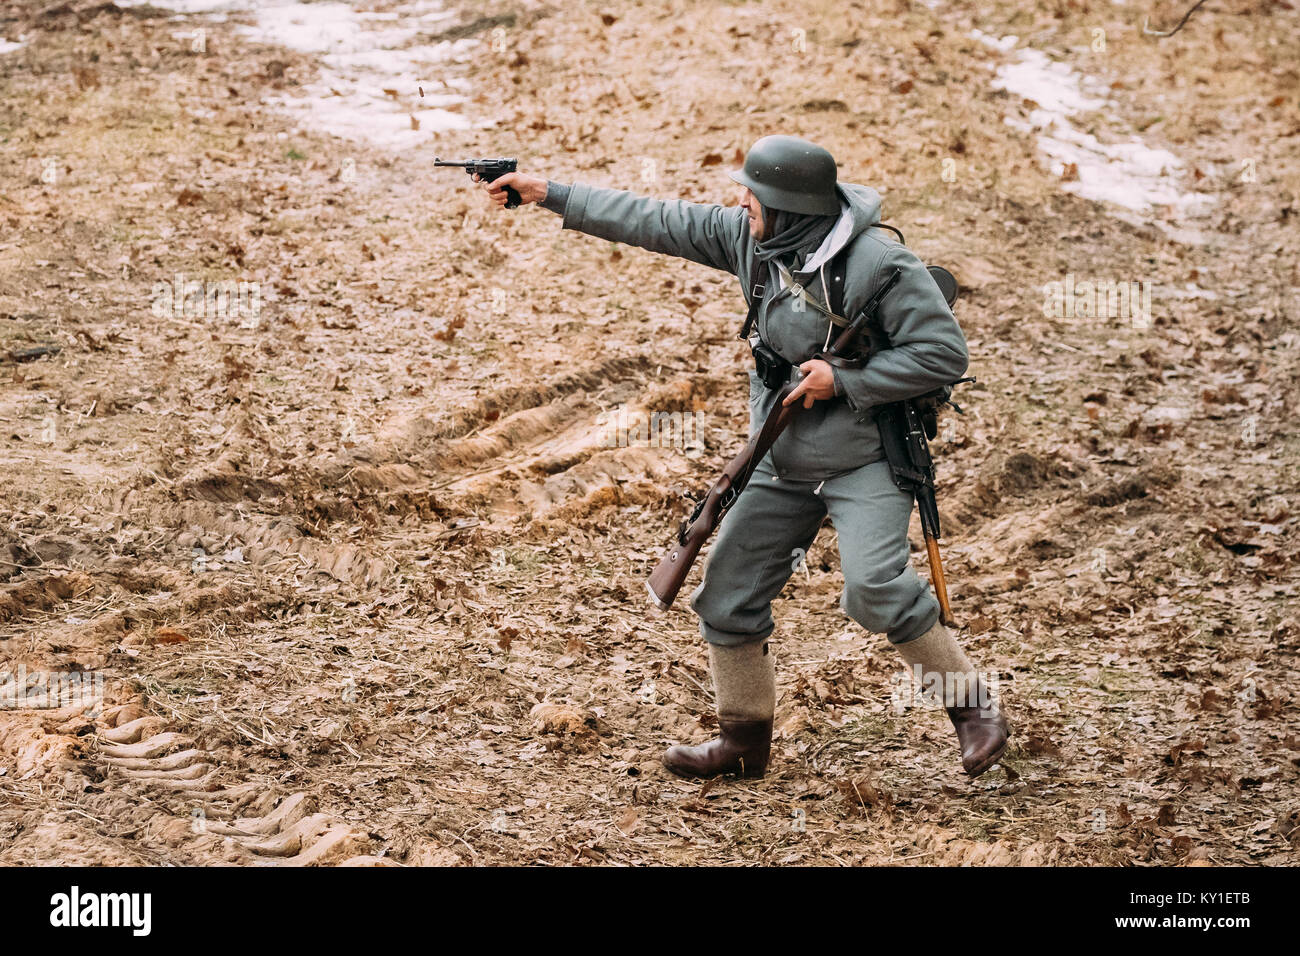 Rogachev, Belarus - Februar 25, 2017: Re-Enactor als Soldat in der deutschen Wehrmacht Infanterie WW II Schießen von Pistole gekleidet Stockfoto